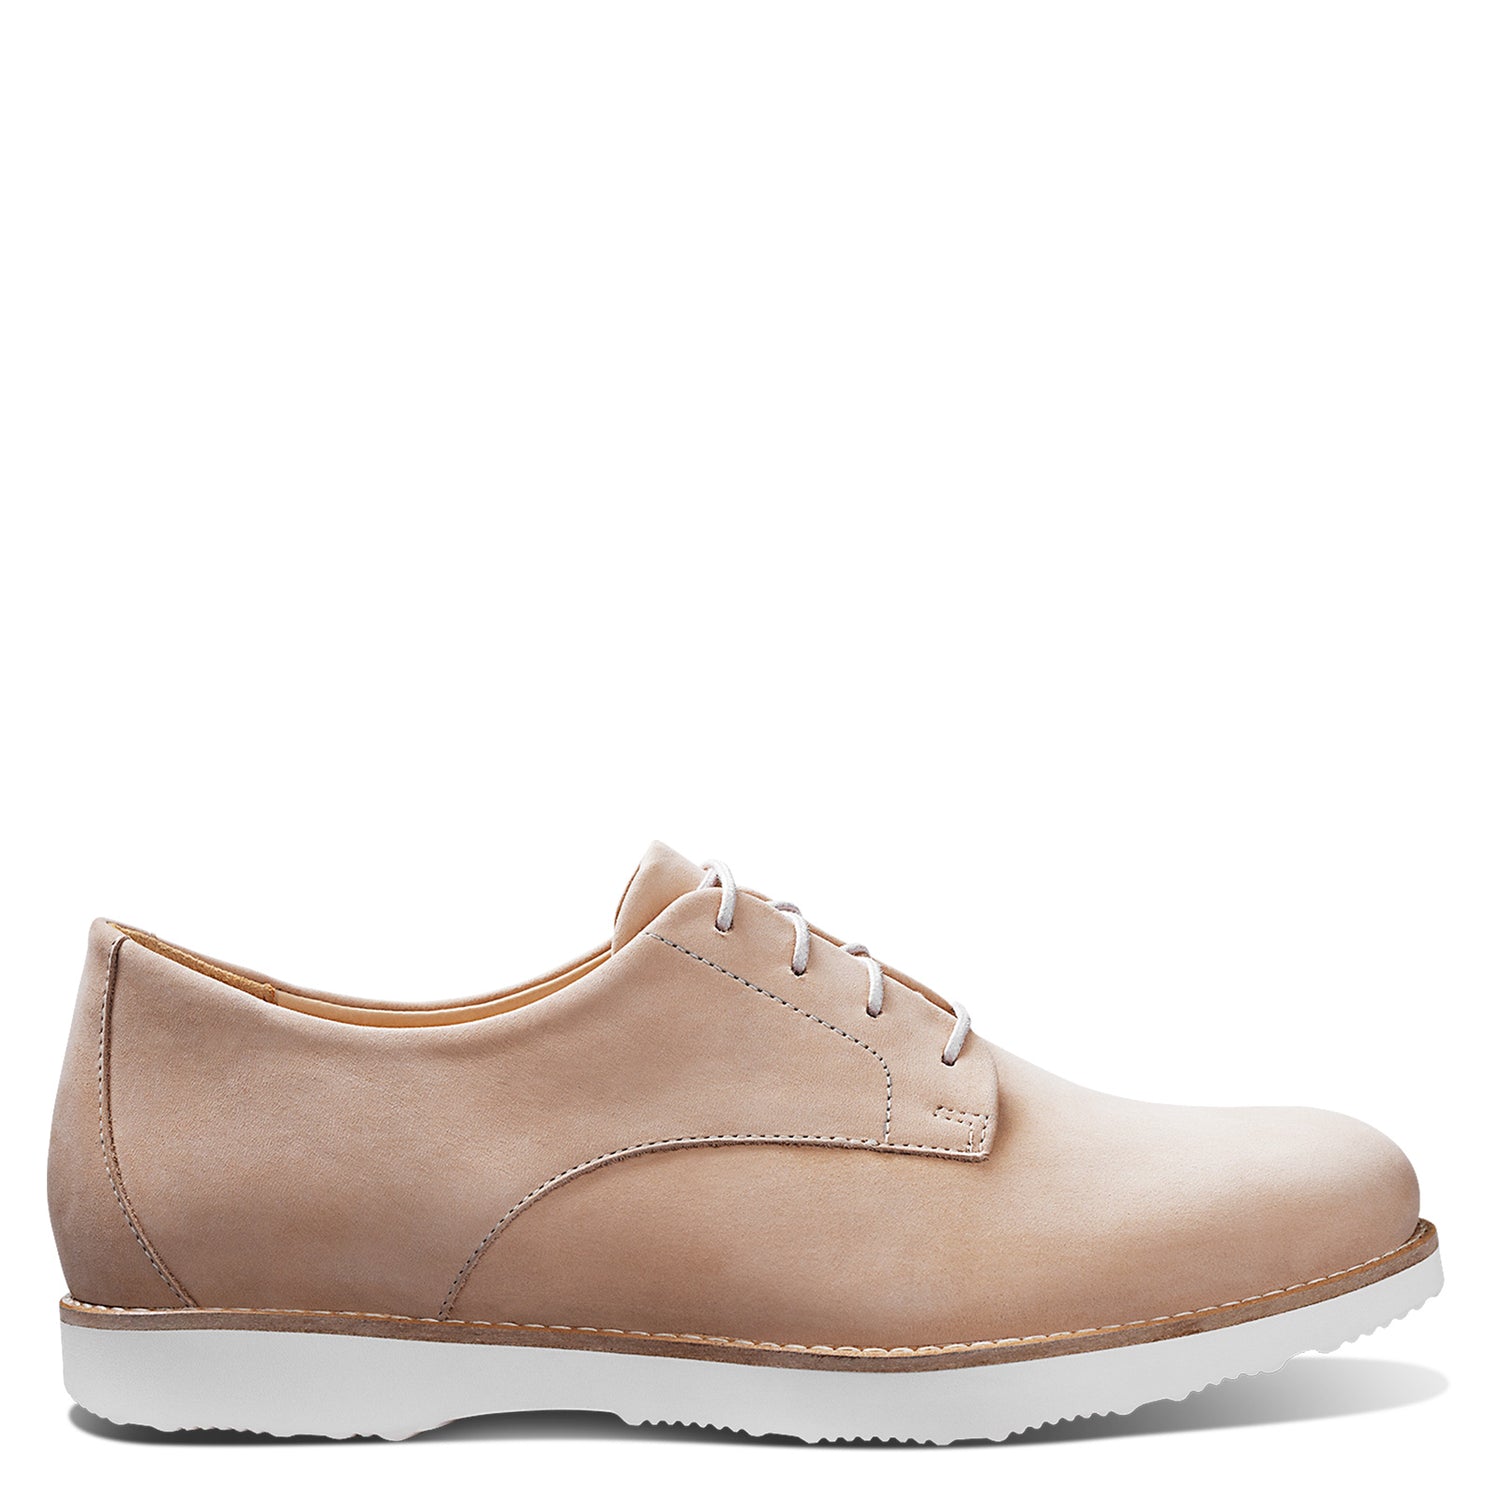 Peltz Shoes  Women's Samuel Hubbard Hubbard Free 2.0 Oxford OATMEAL W1101-069